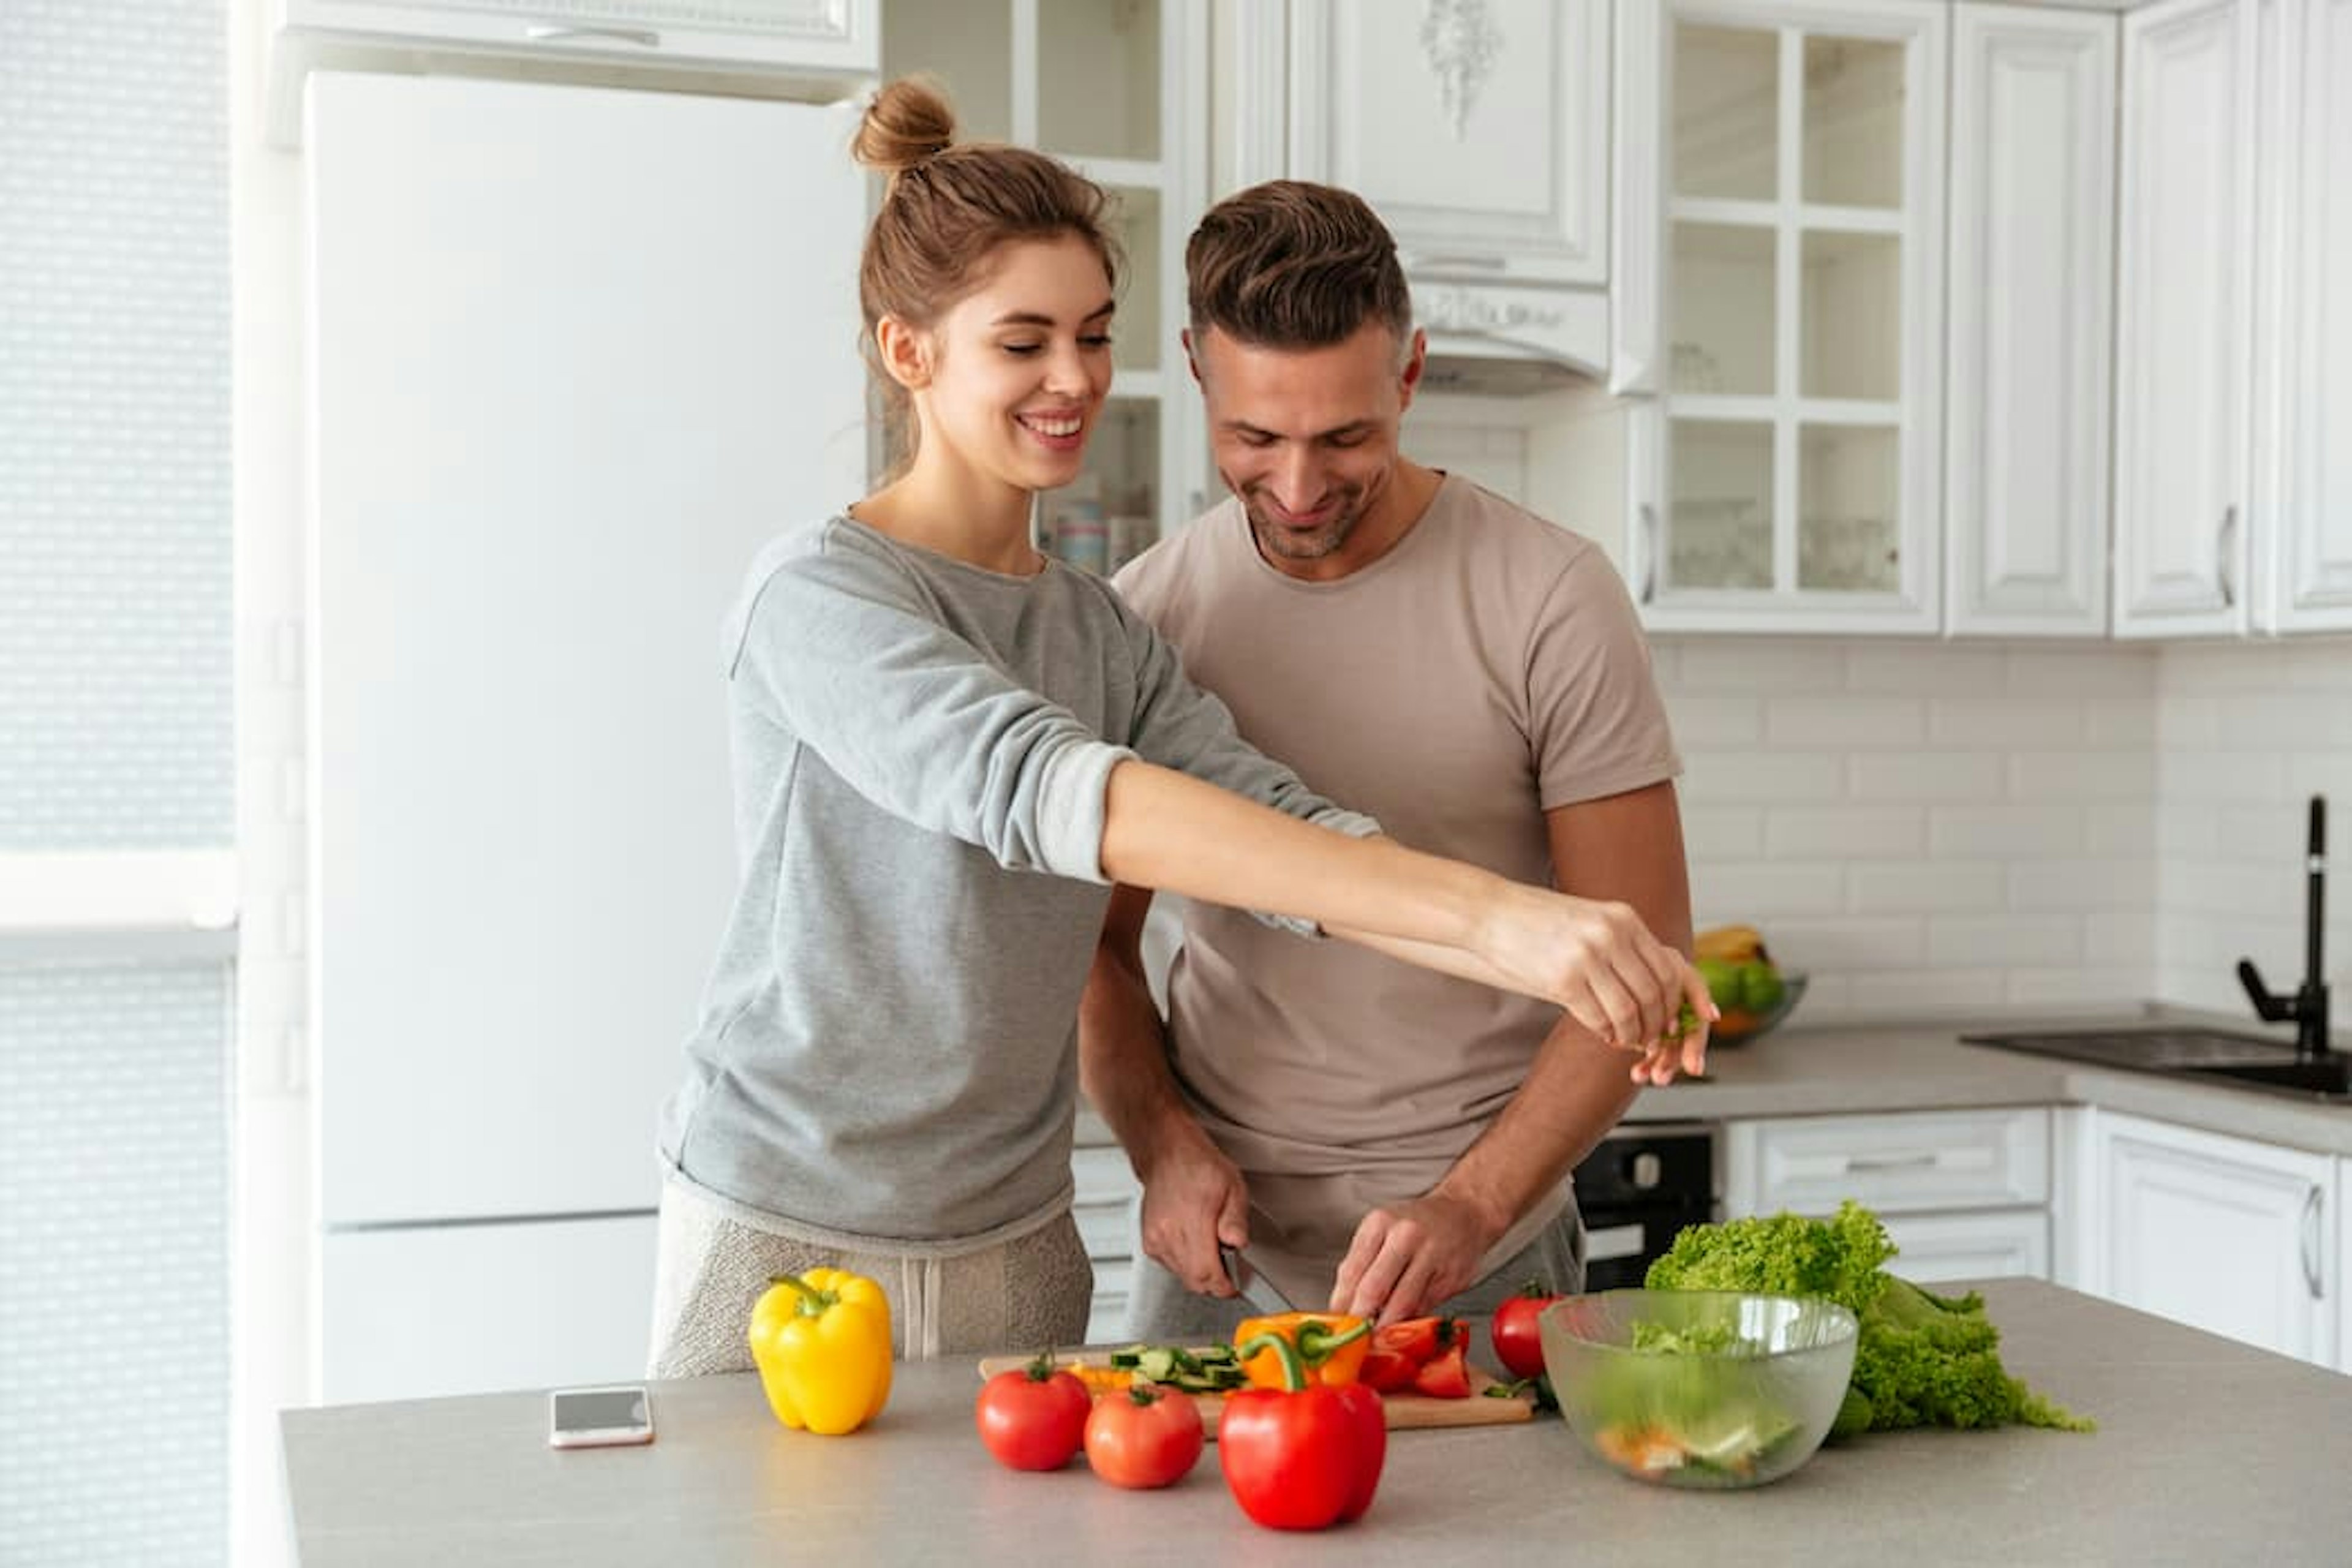 ES Um homem e uma mulher preparando uma salada em uma cozinha.